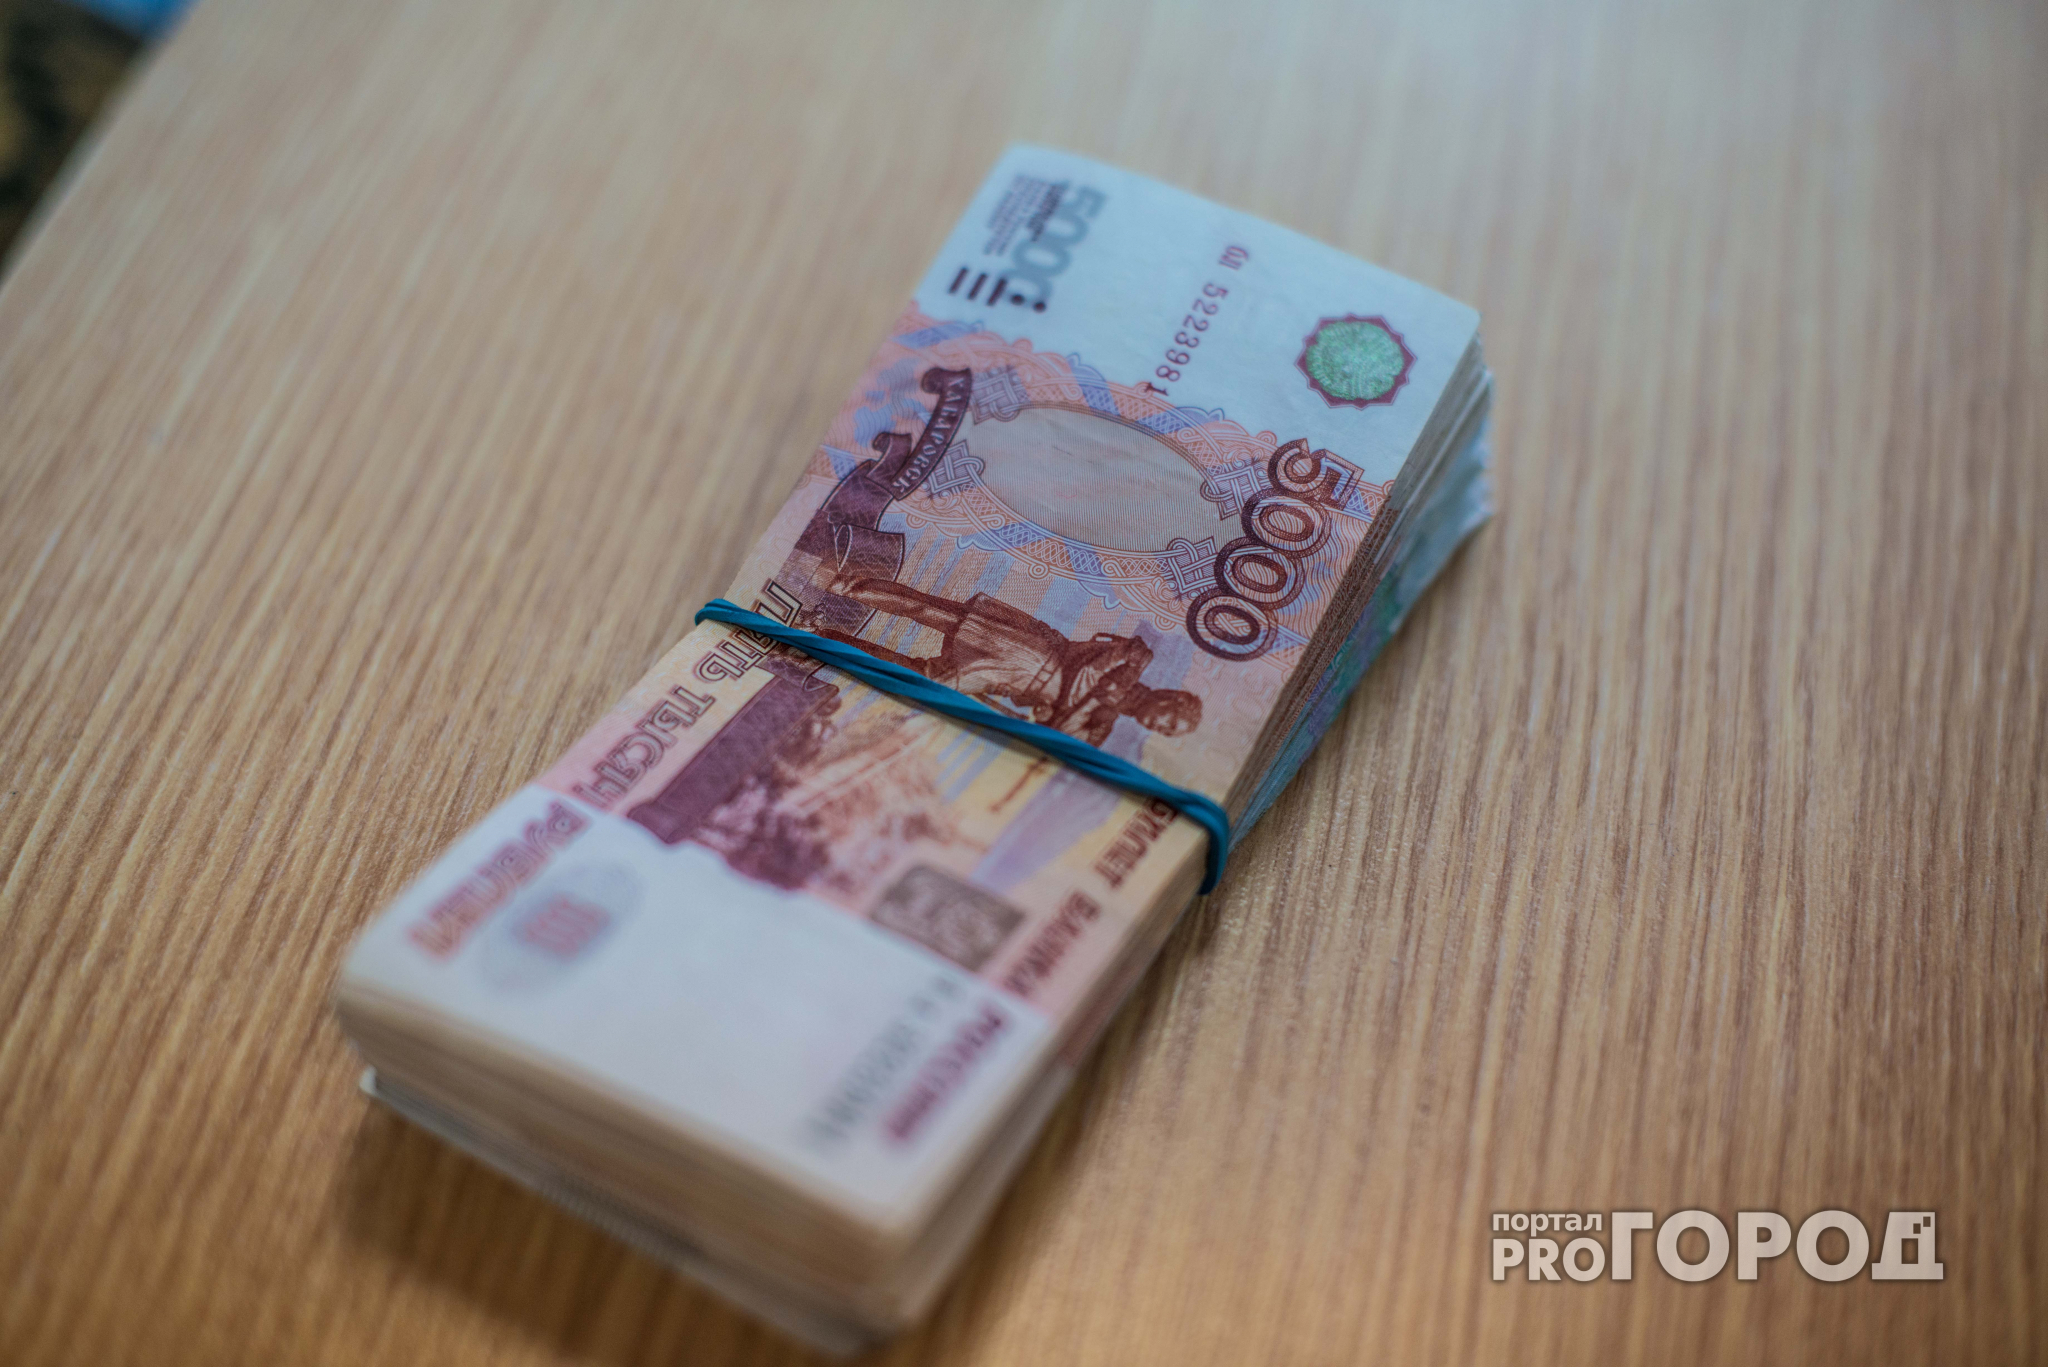 Глеб Никитин пообещал давать больше денег на реализацию идей нижегородцев (ФОТО)